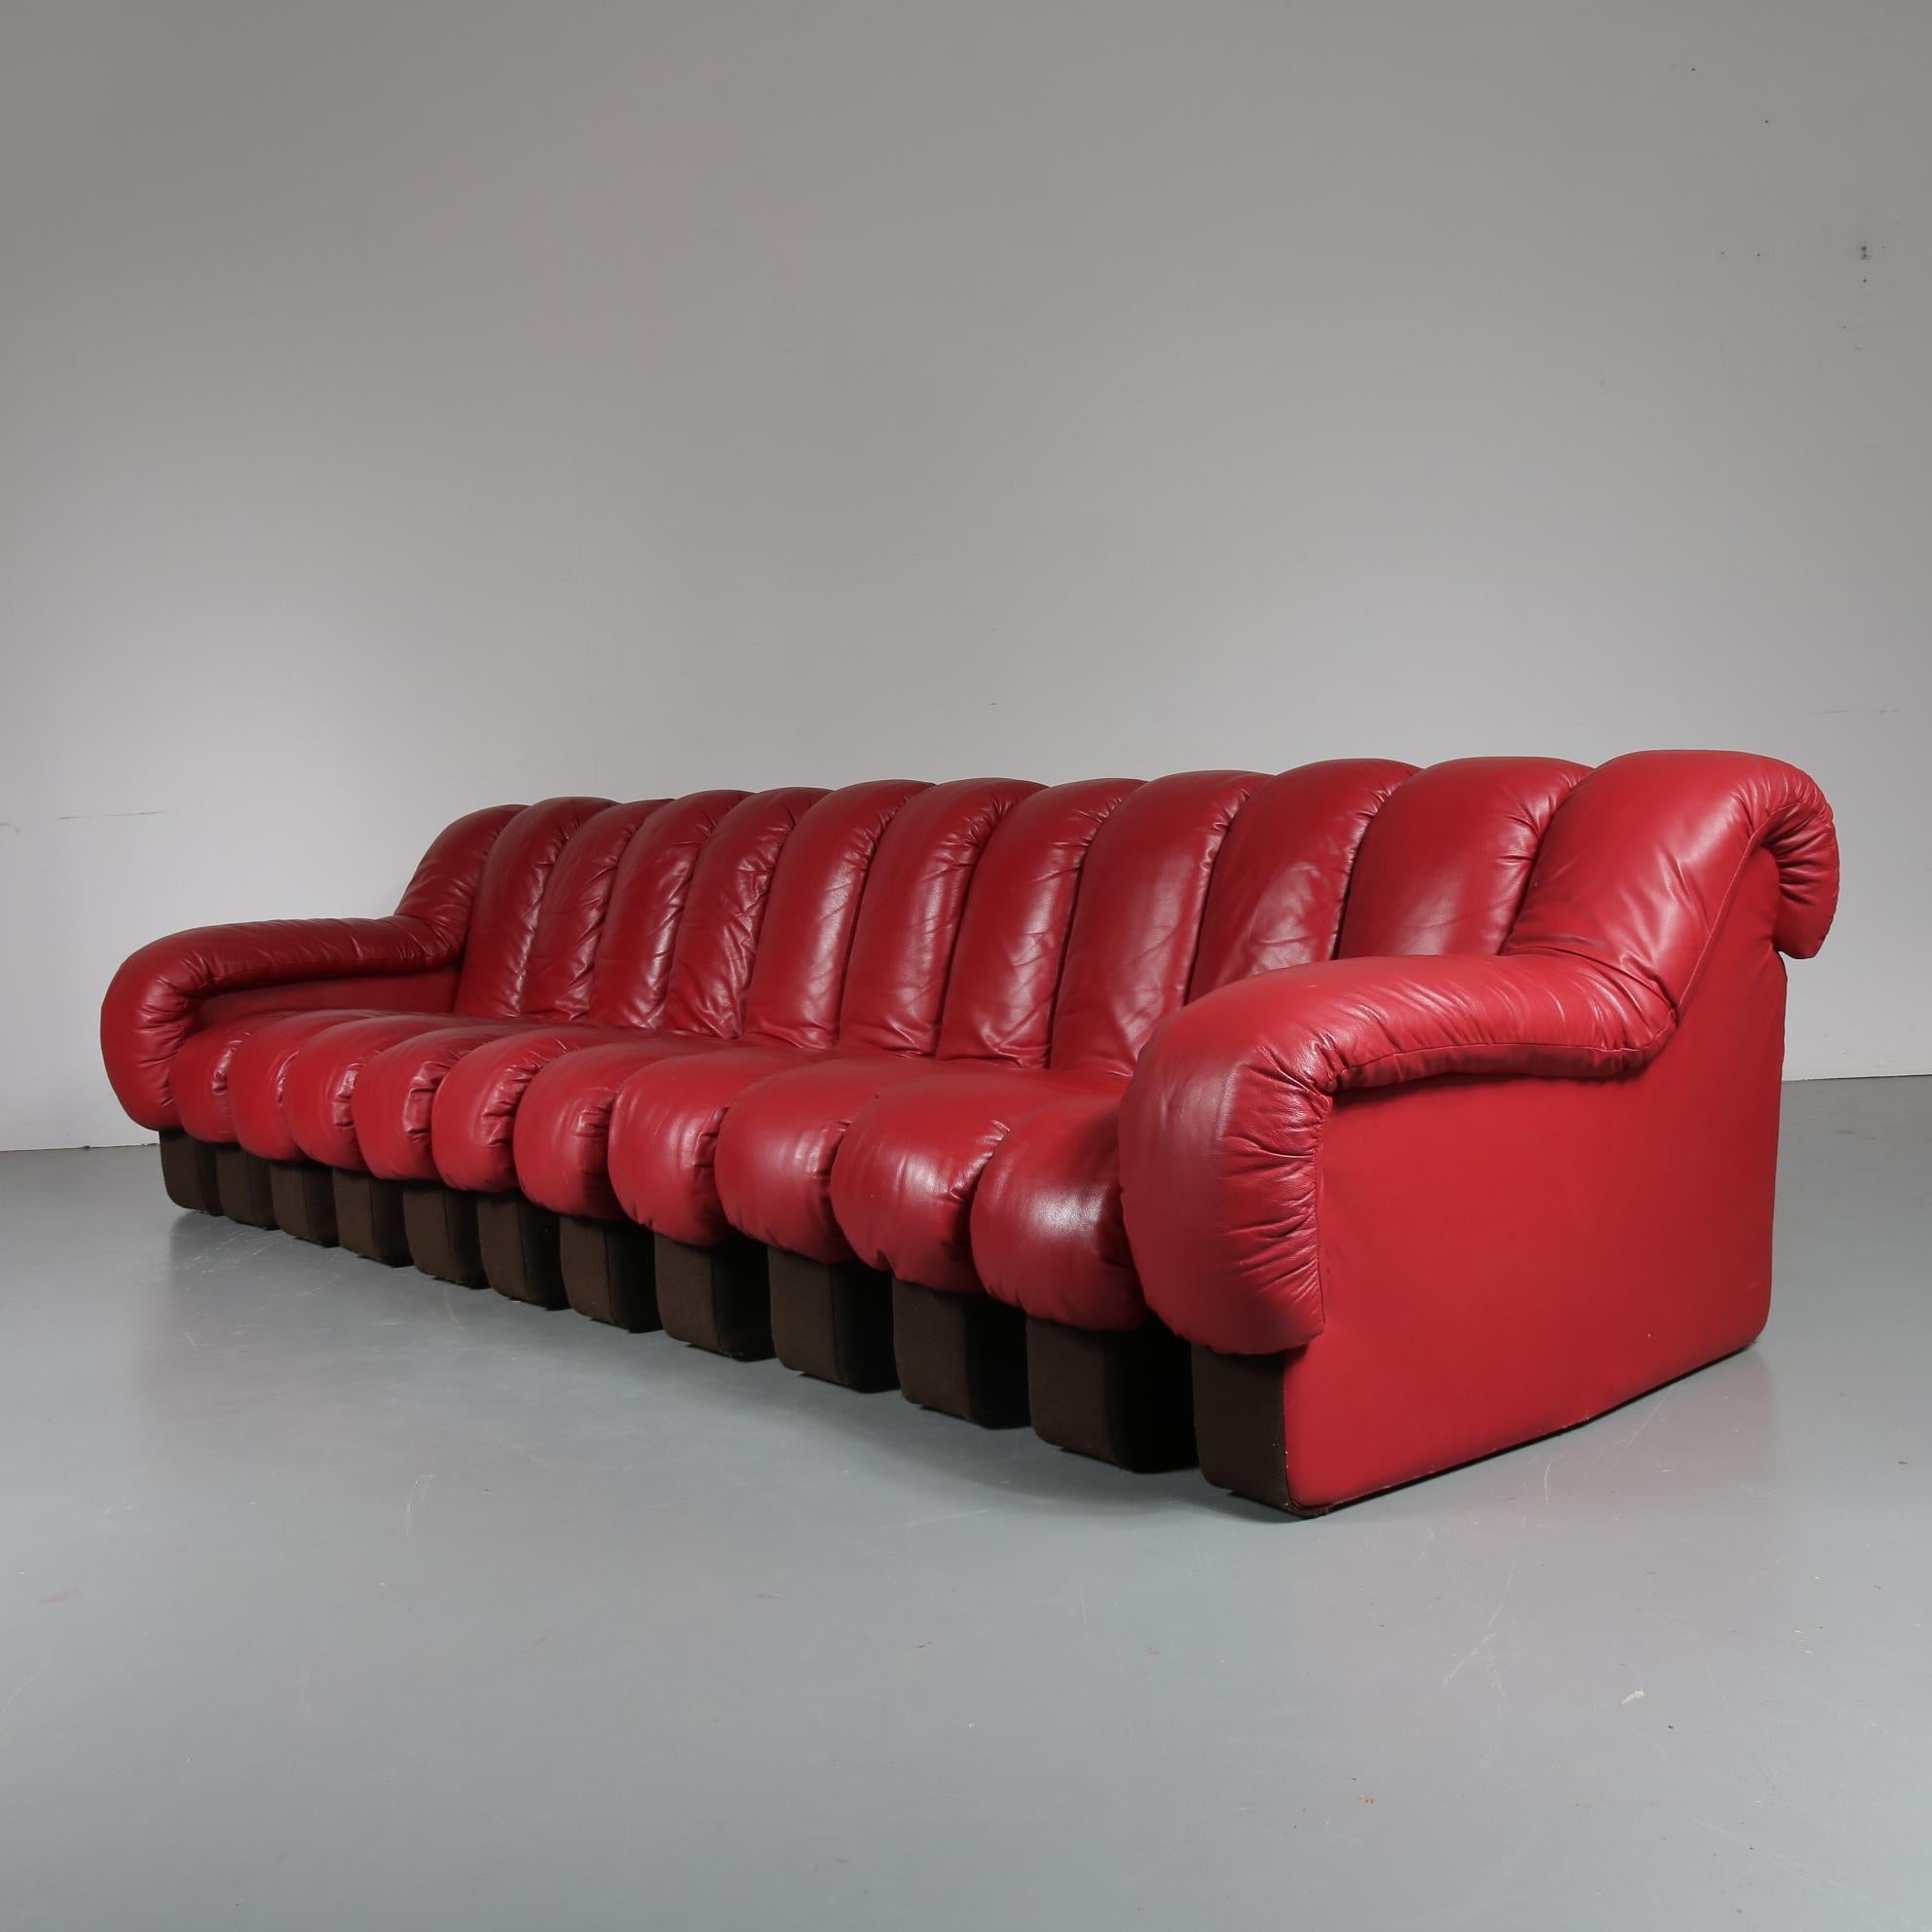 De Sede DS-600 Sofa in Red Leather, Switzerland, 1960 (Moderne der Mitte des Jahrhunderts)